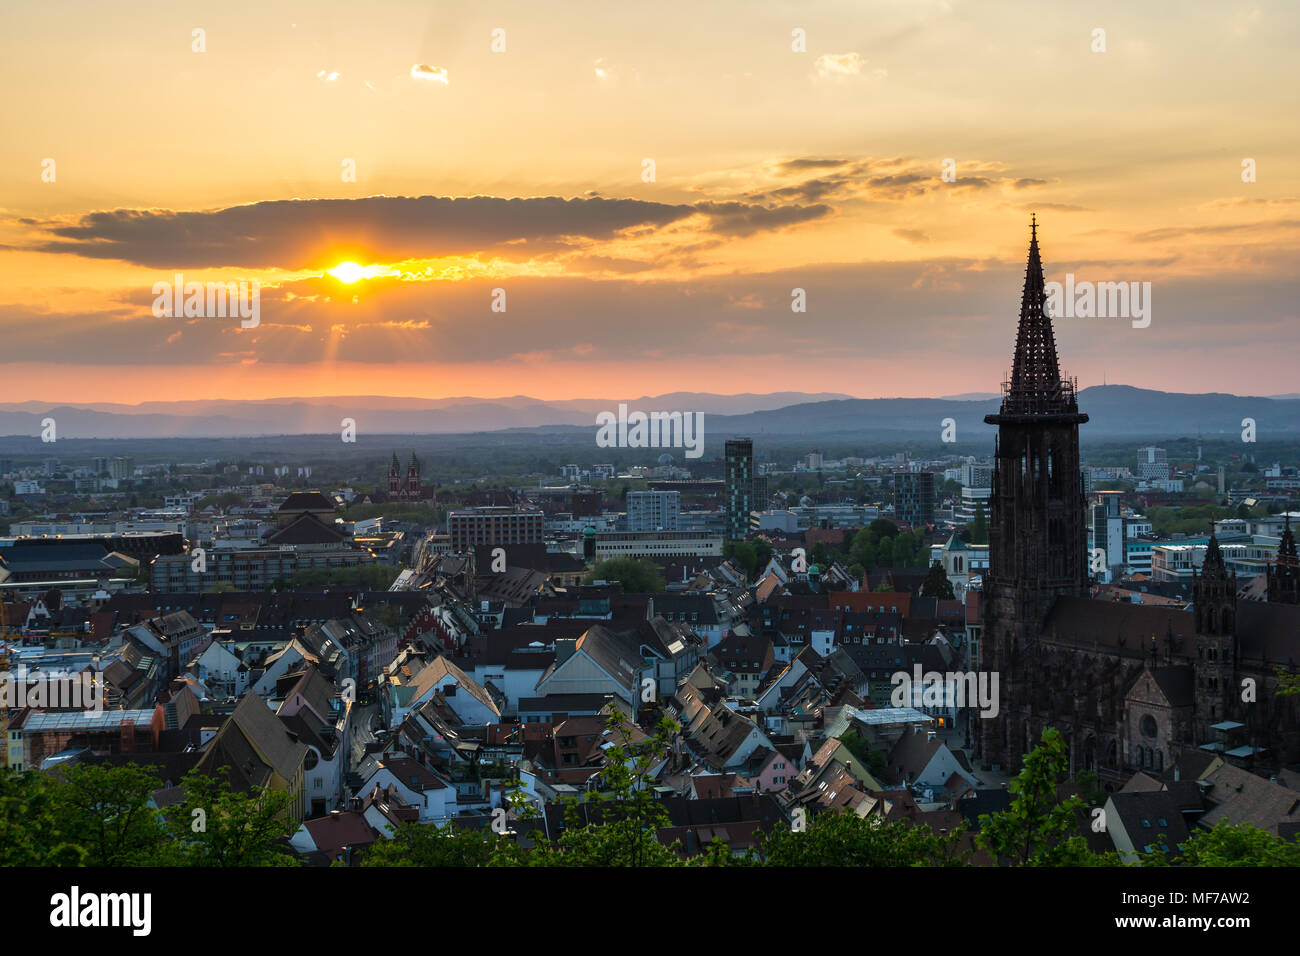 Germania, arancio caldo sole serale sui tetti della città di Freiburg im Breisgau dal di sopra Foto Stock